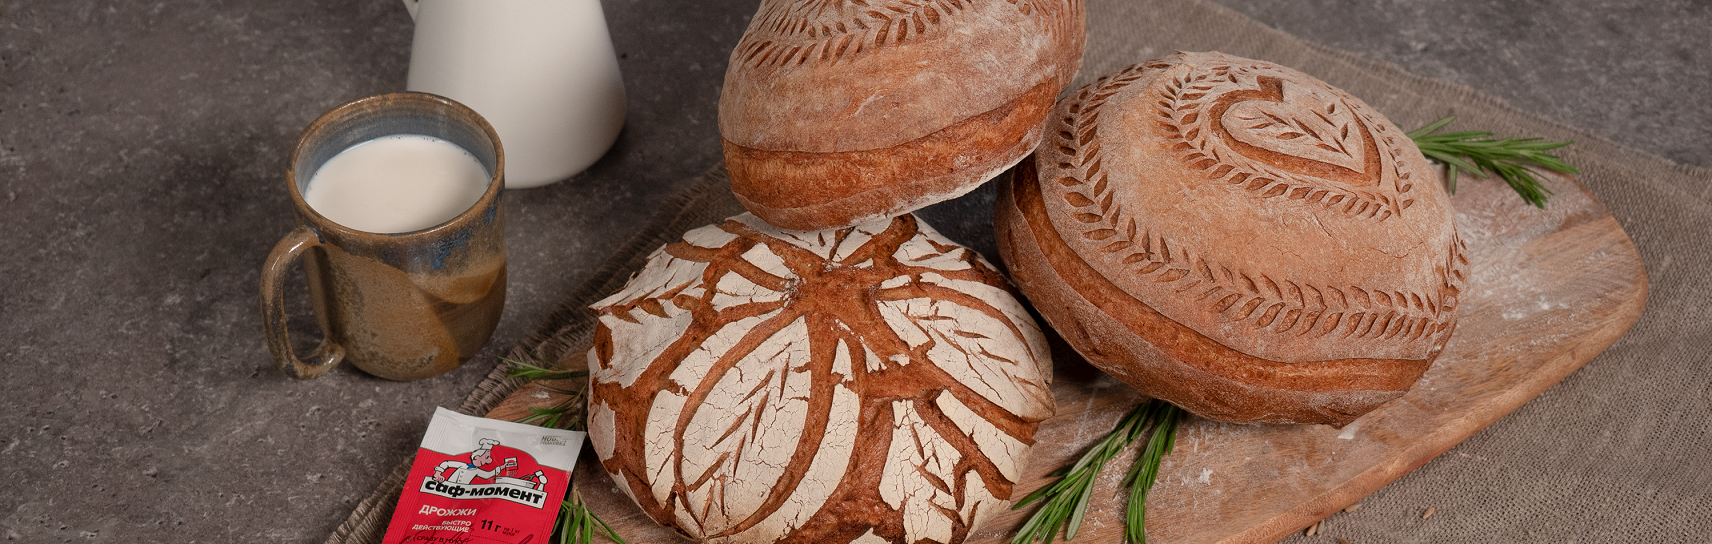 Фигурный хлеб (узоры на хлебе)